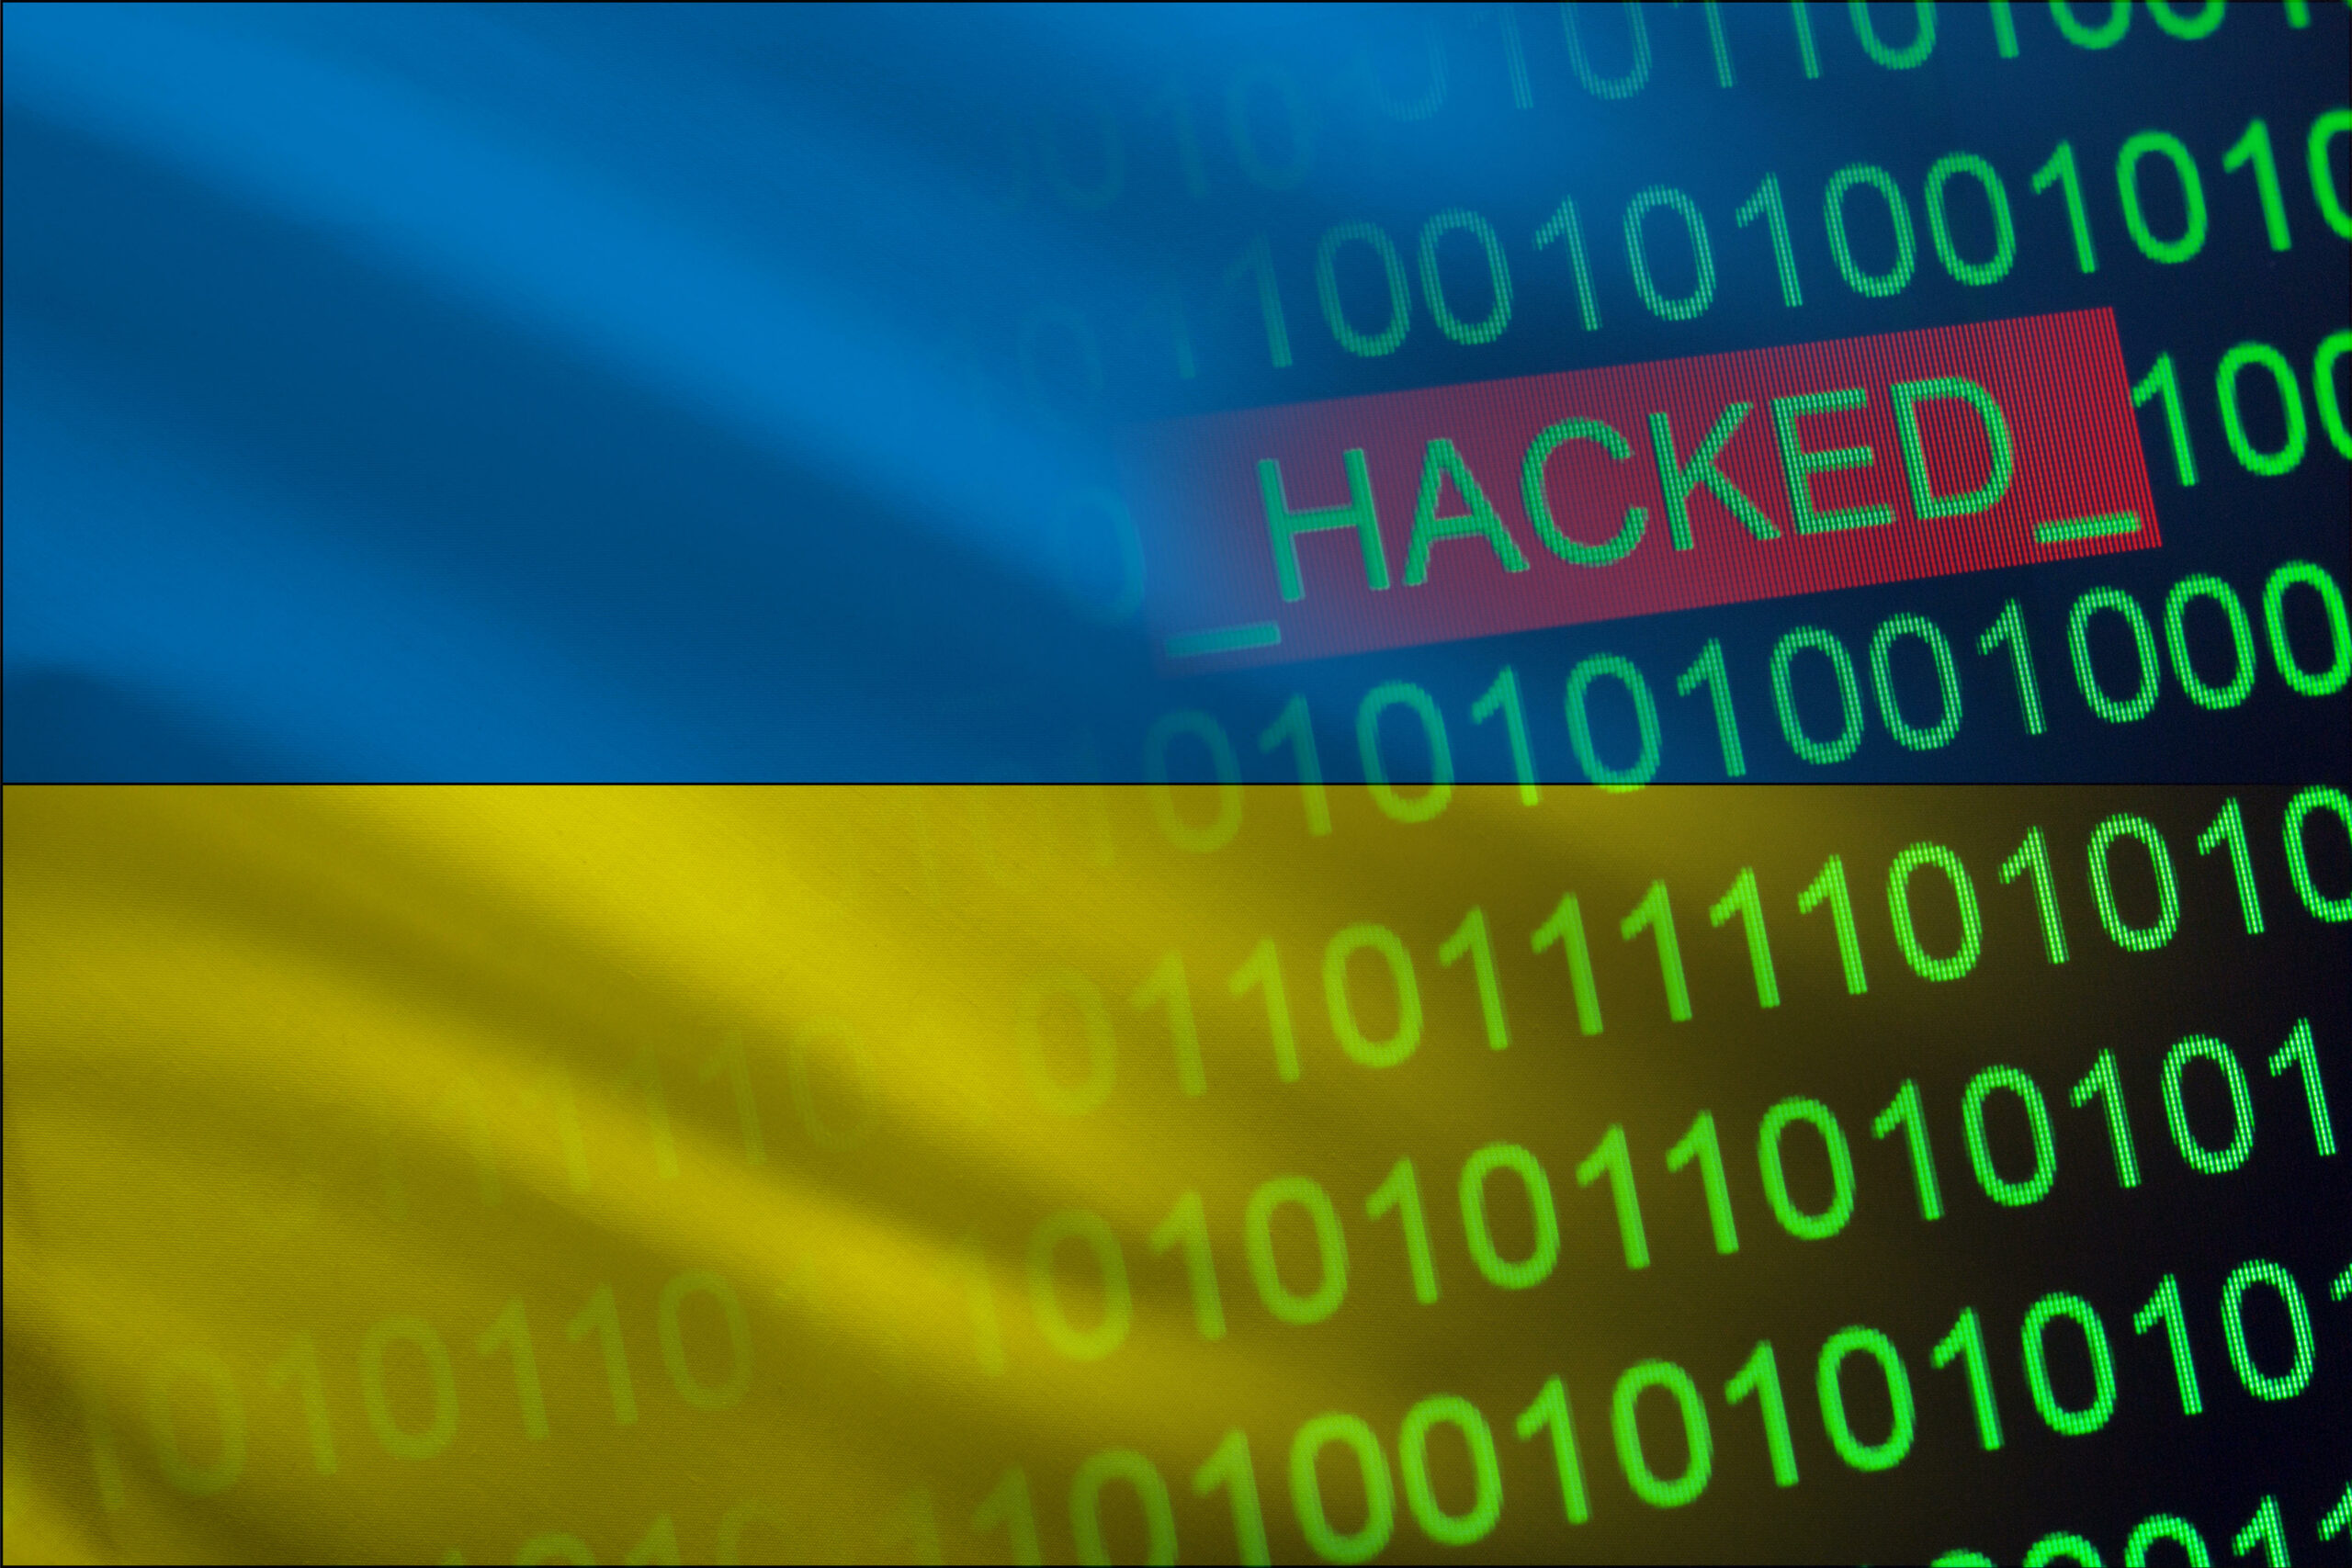 مجموعه ای از حملات سایبری به سازمان های زیرساخت حیاتی اوکراین ضربه زد